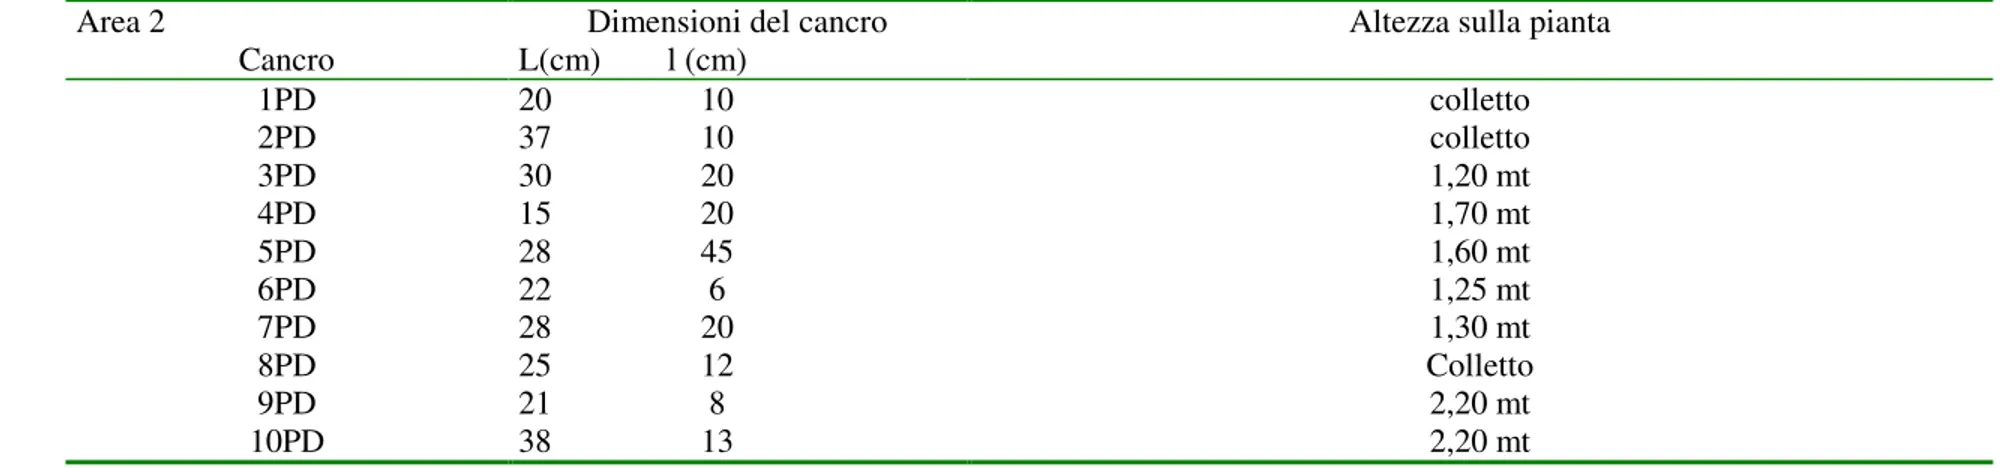 Tabella 4- - Dimensioni e posizione sul pollone dei cancri n stroma campionati nell’area 2 